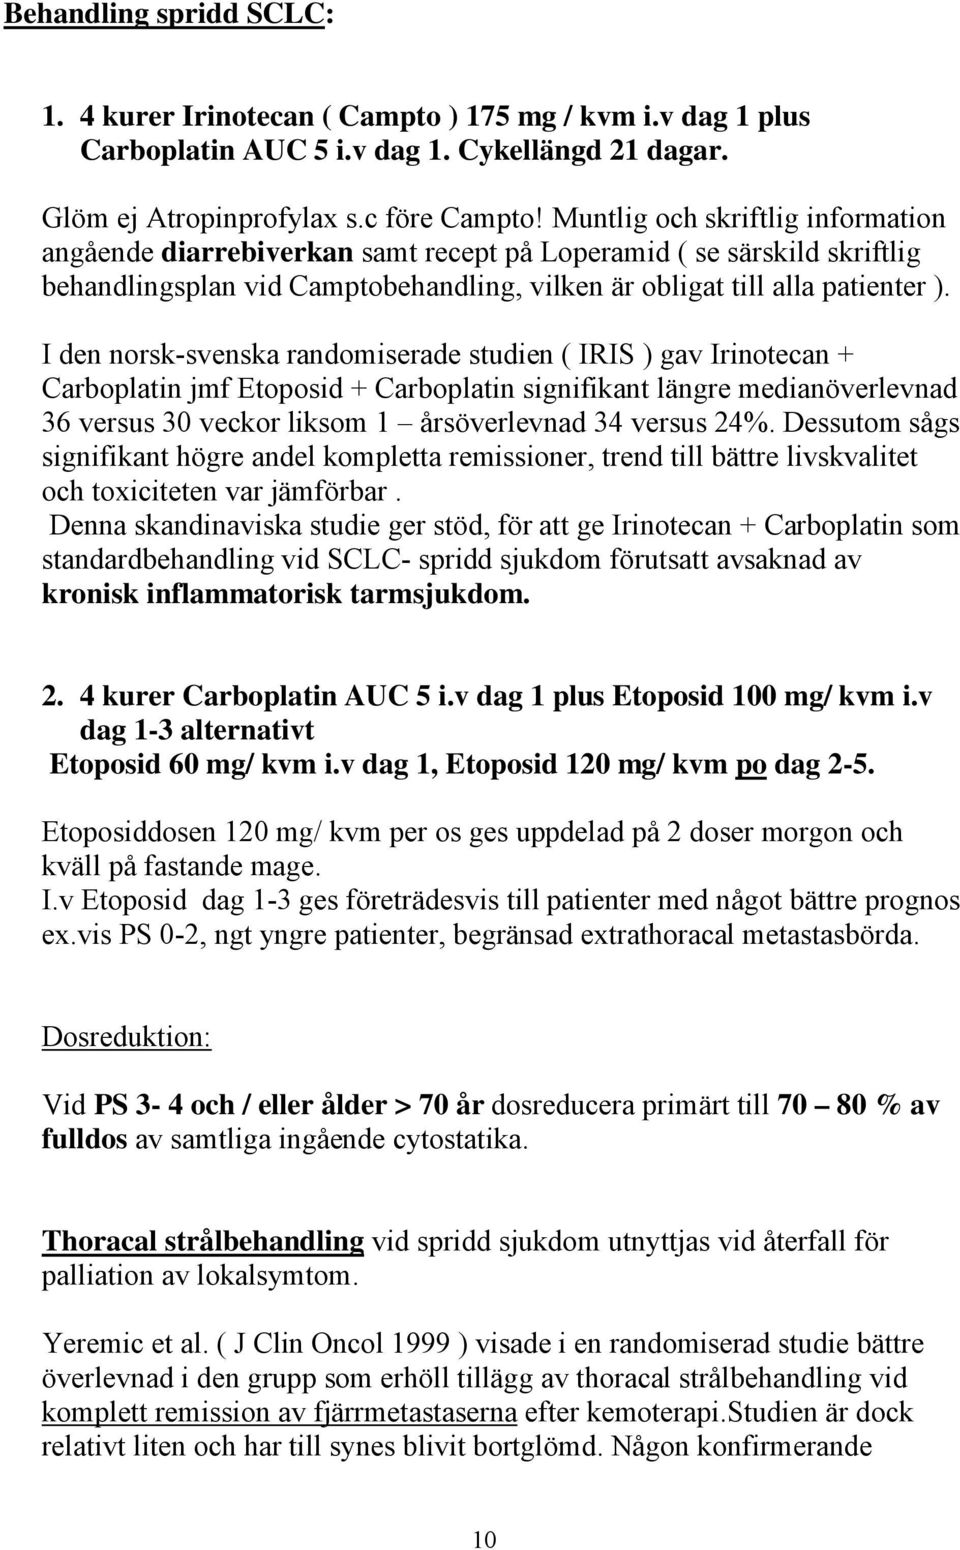 I den norsk-svenska randomiserade studien ( IRIS ) gav Irinotecan + Carboplatin jmf Etoposid + Carboplatin signifikant längre medianöverlevnad 36 versus 30 veckor liksom 1 årsöverlevnad 34 versus 24%.